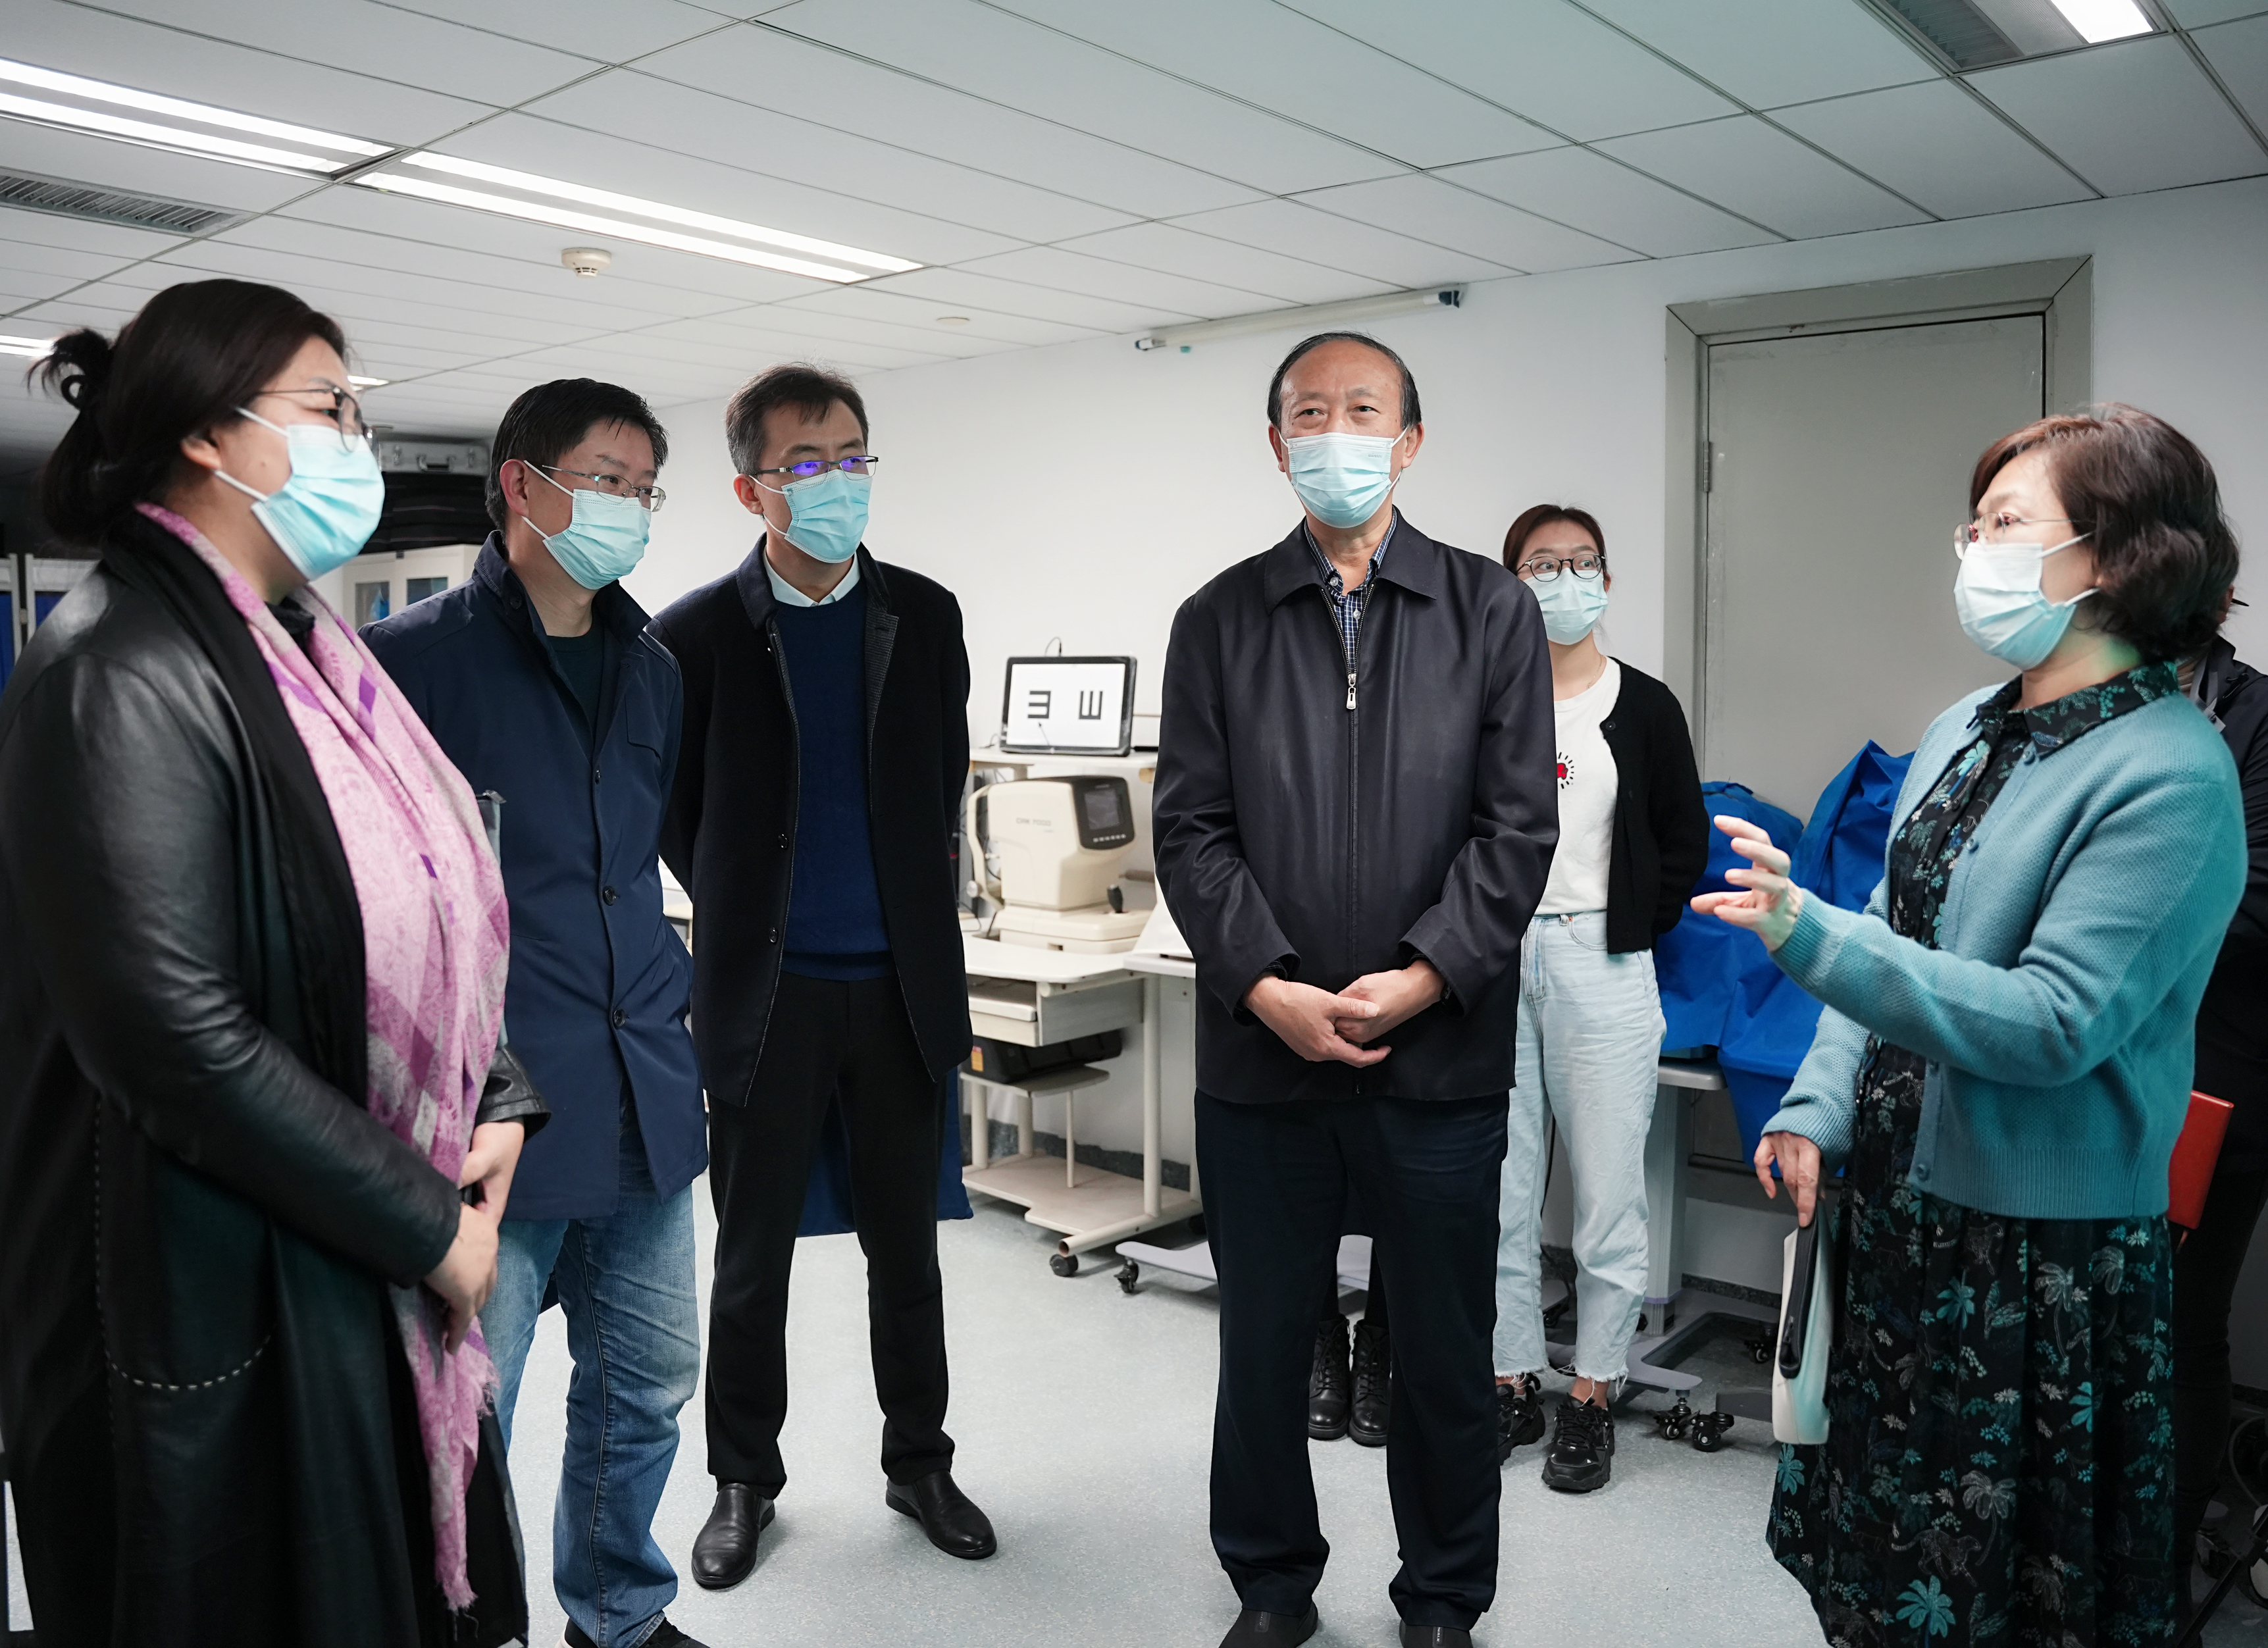 「我看见·荆楚送光明」公益项目在武汉大学人民医院启动